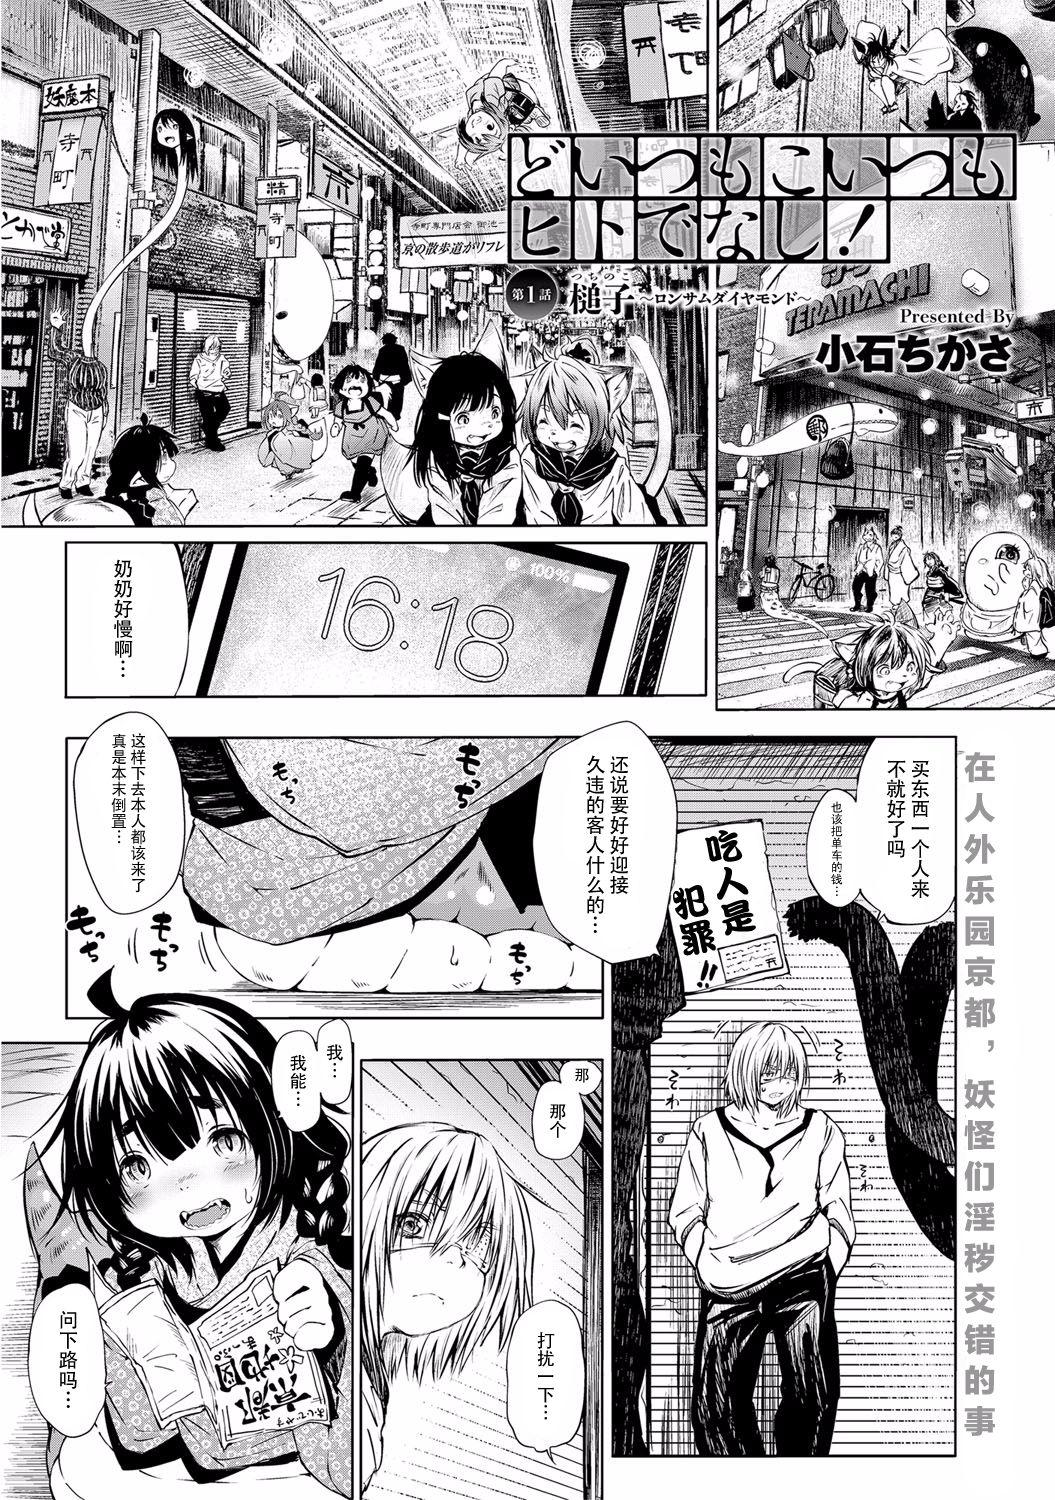 Real Sex Doitsu mo Koitsu mo Hito de Nashi! Ch. 1 - Tsuchinoko Shesafreak - Page 2